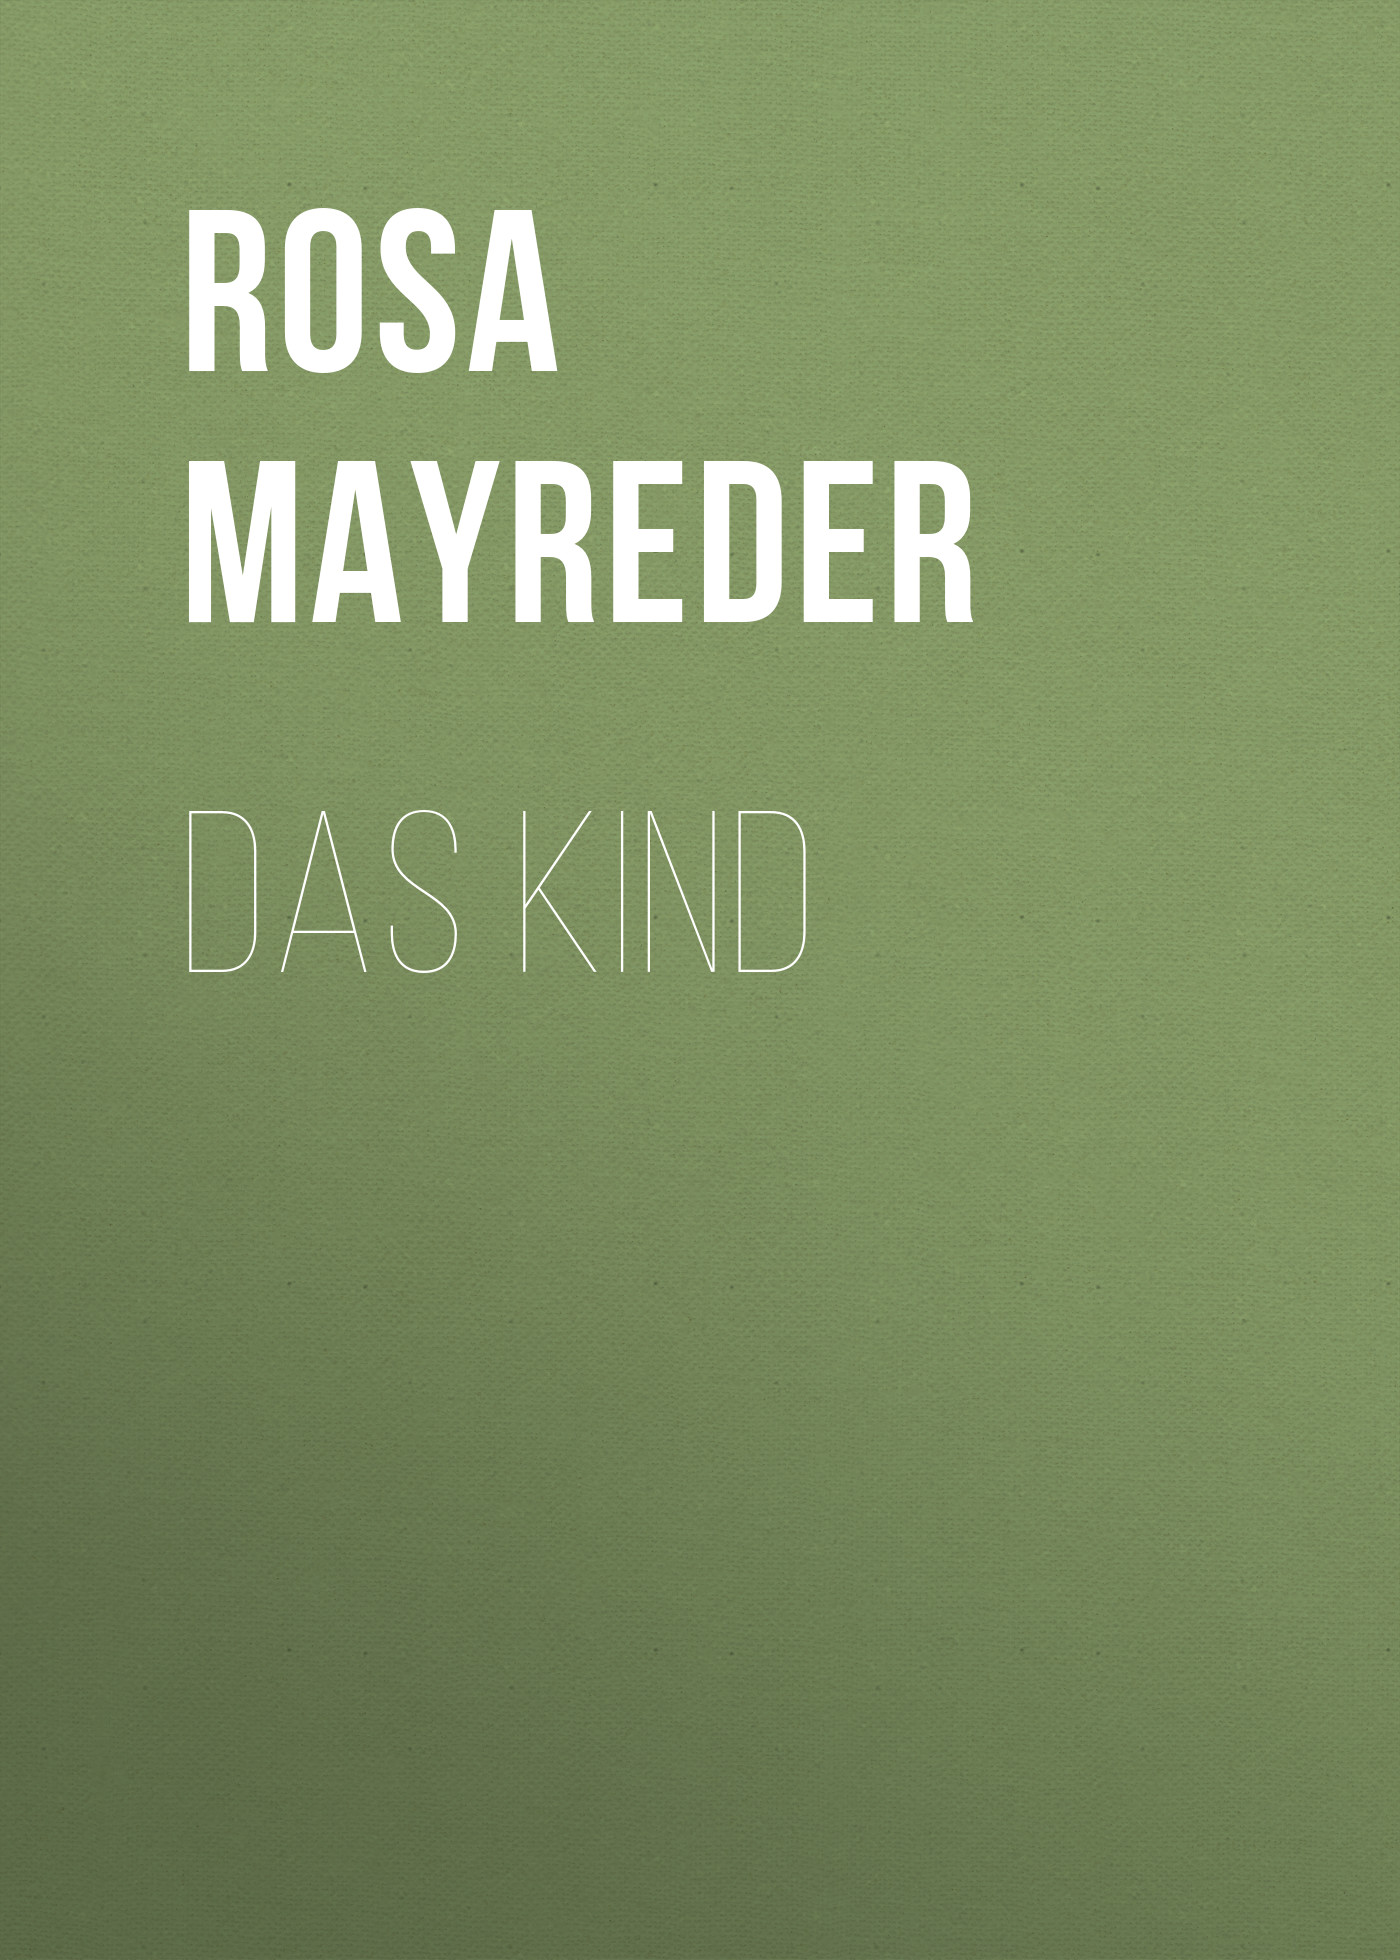 Книга Das Kind из серии , созданная Rosa Mayreder, может относится к жанру Зарубежная классика. Стоимость электронной книги Das Kind с идентификатором 48631844 составляет 0 руб.